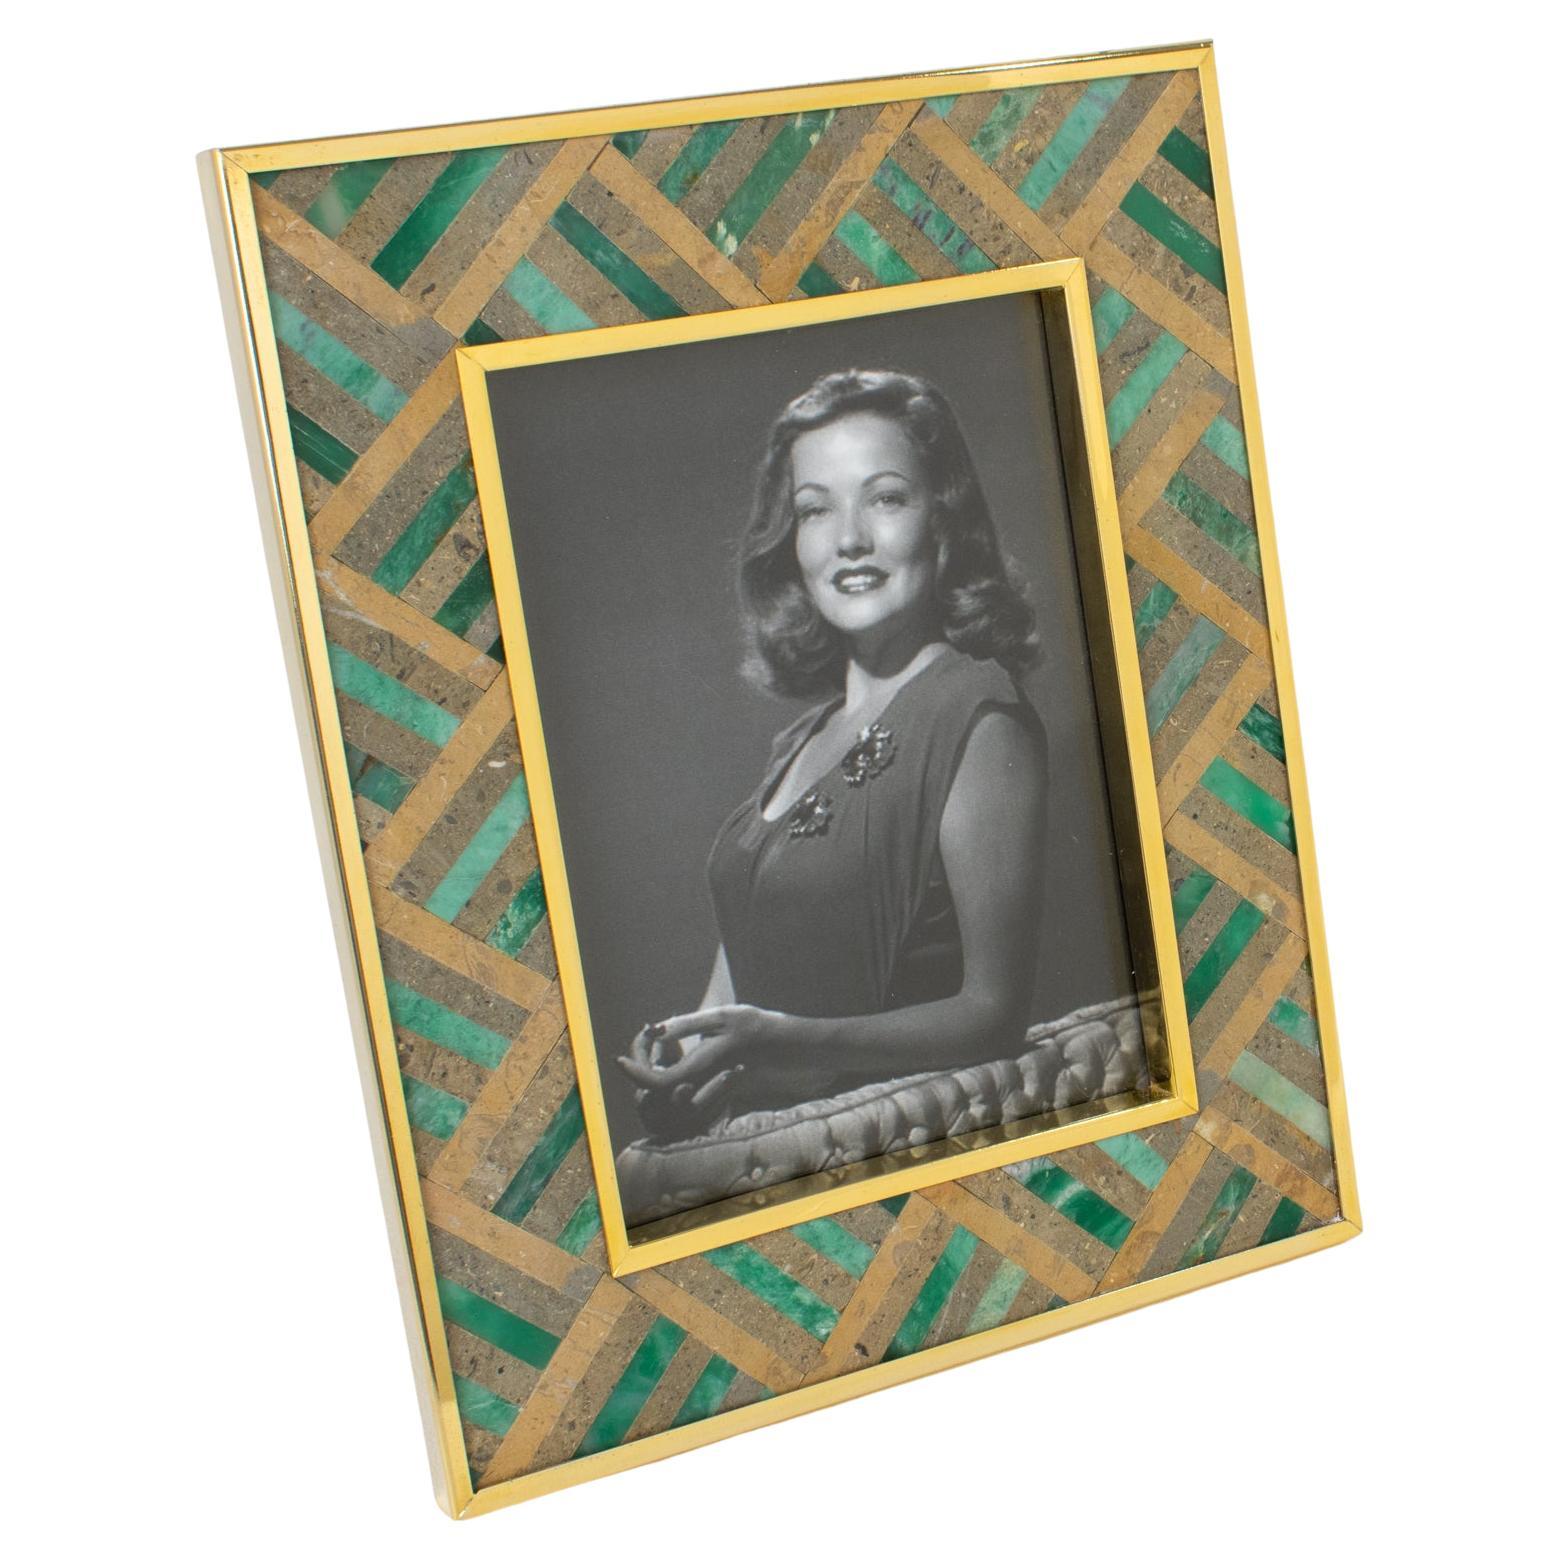 Rita Frascione Firenze, Bilderrahmen aus vergoldetem Messing, Travertin und Marmor, 1980er-Jahre